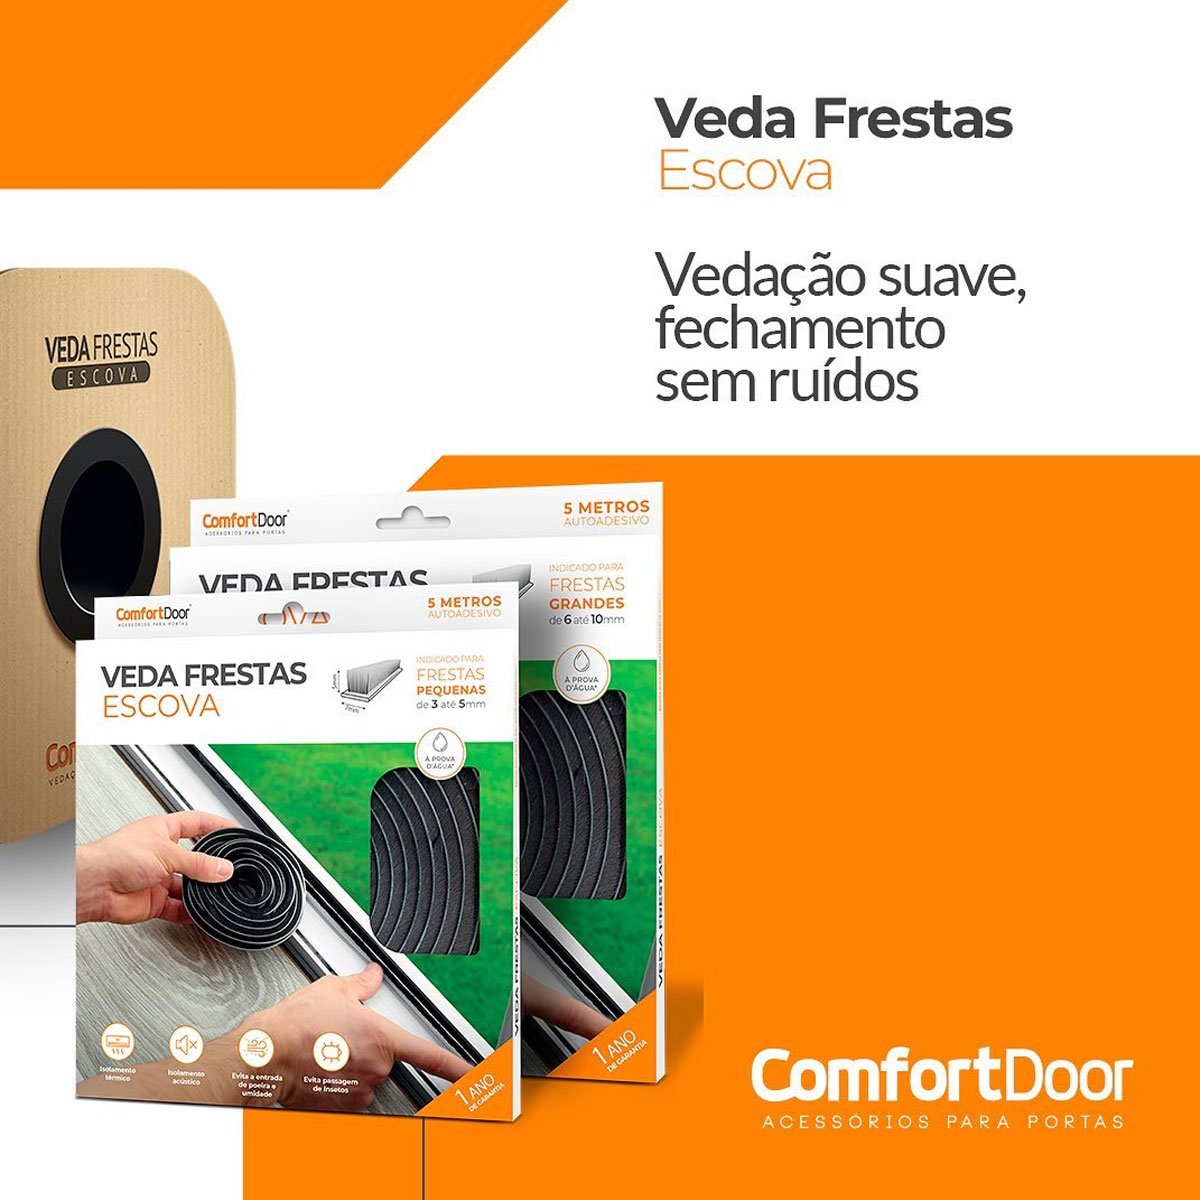 Veda Frestas Escova 10 x 7mm Comfort Door 5 Metros Cinza - 7